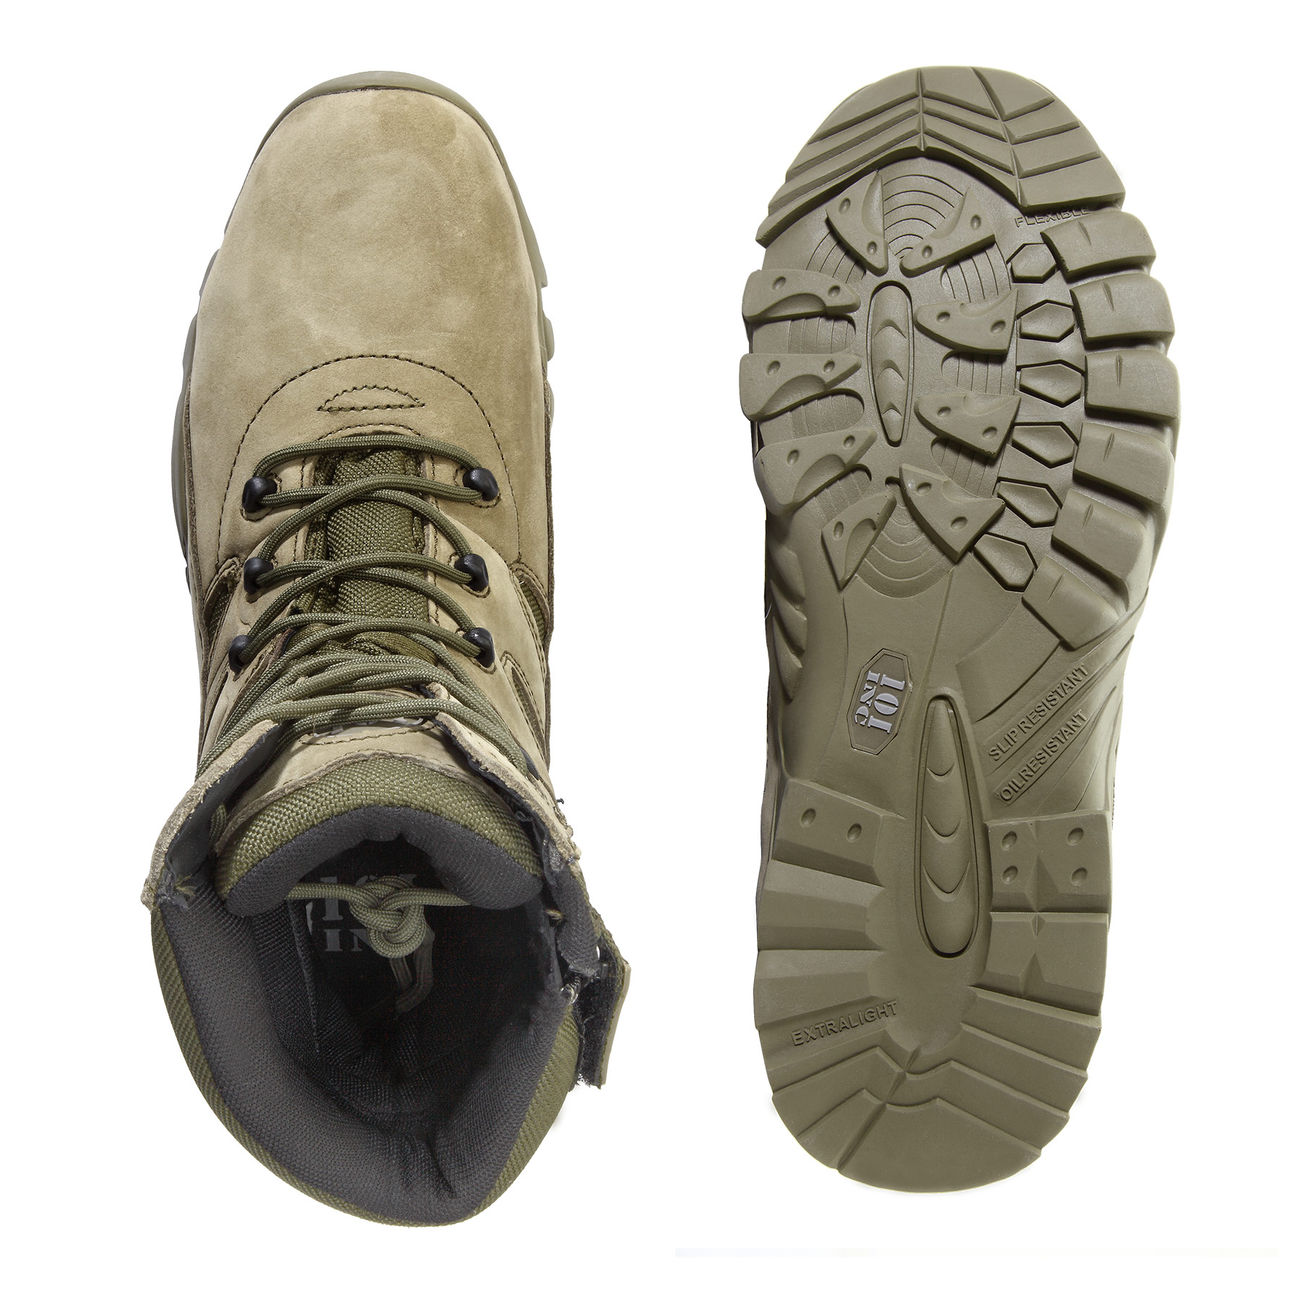 101 INC. Stiefel Tactical Boots Recon grün Bild 4